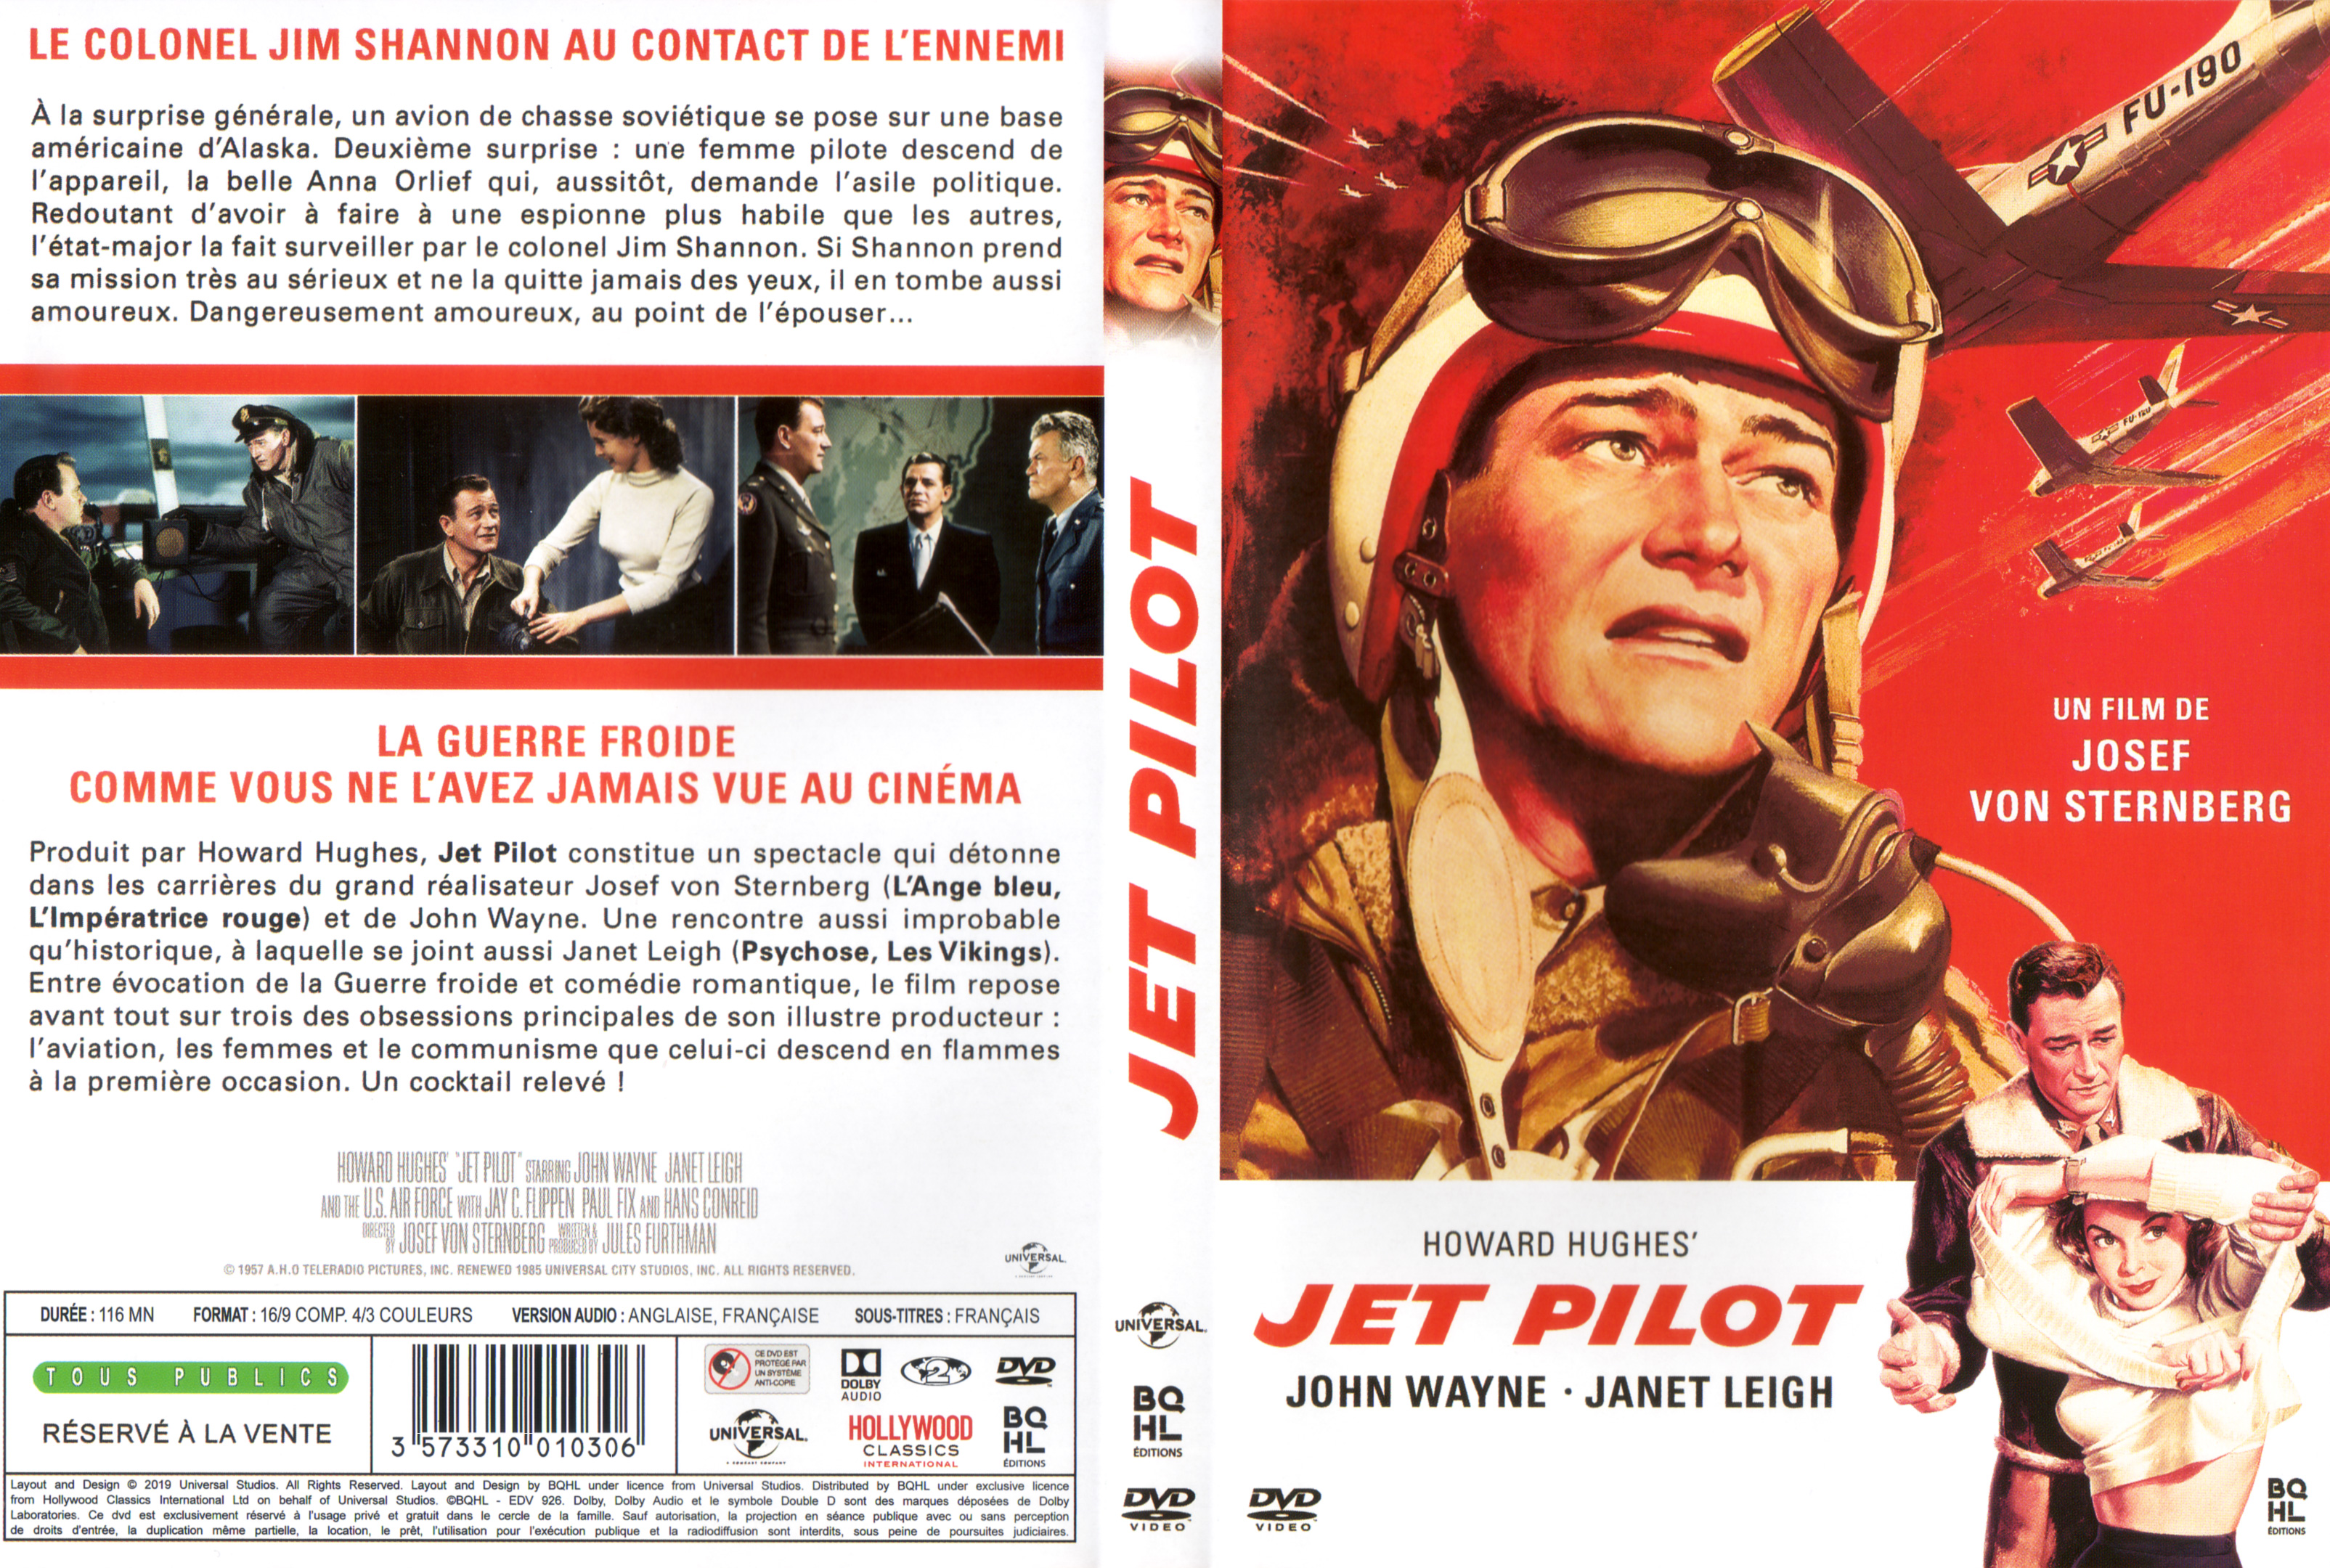 Jaquette DVD Jet pilot v2